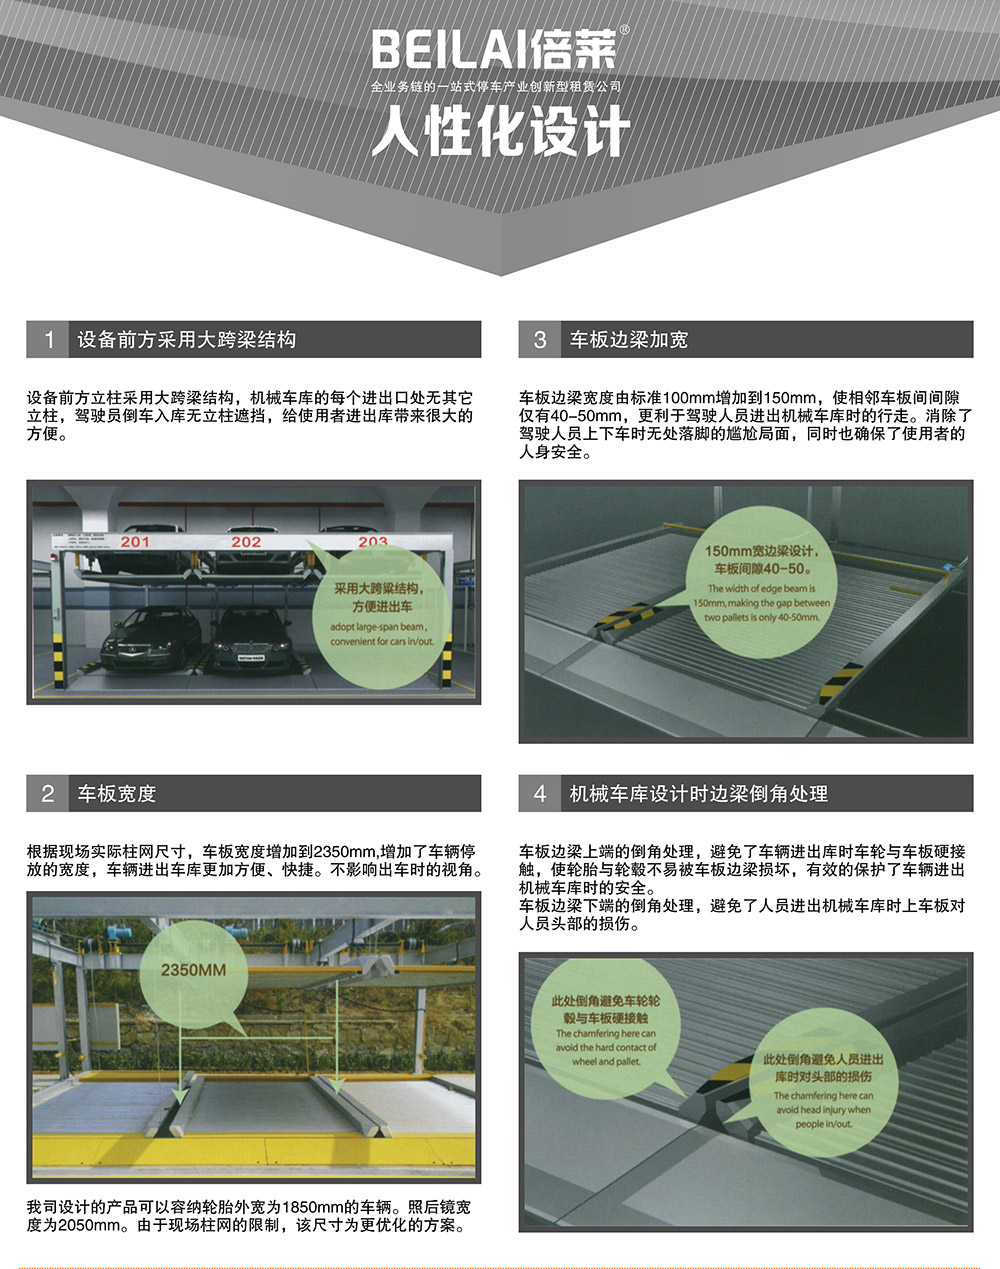 云南昆明重列PSH2二层升降横移立体停车设备人性化设计.jpg